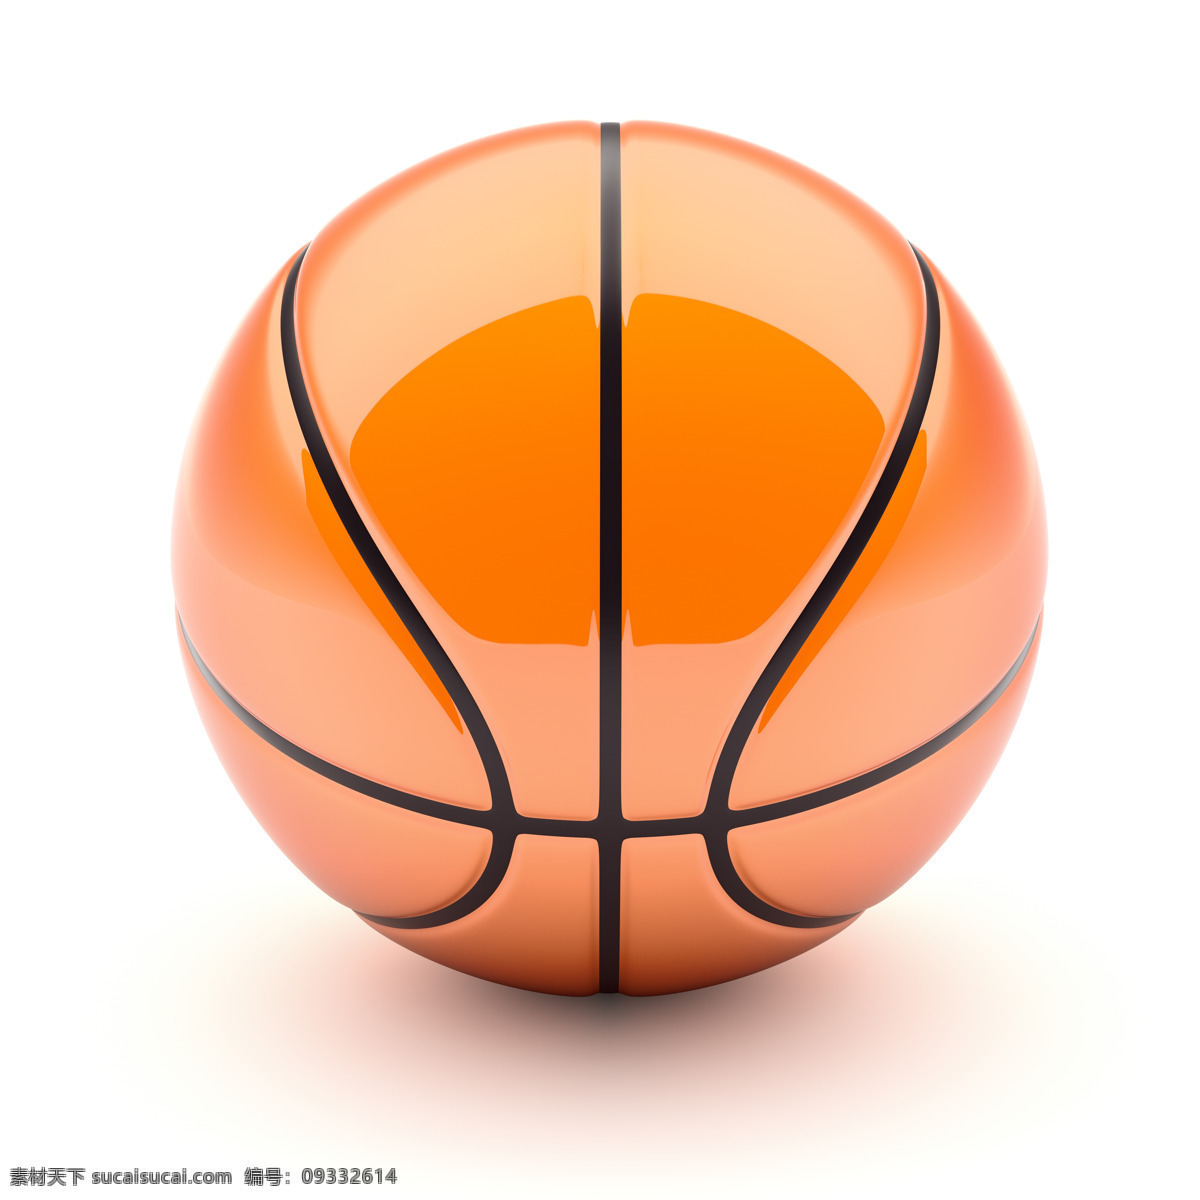 橙色 篮球 橙色篮球 体育 运动 比赛 篮球主题 体育运动 生活百科